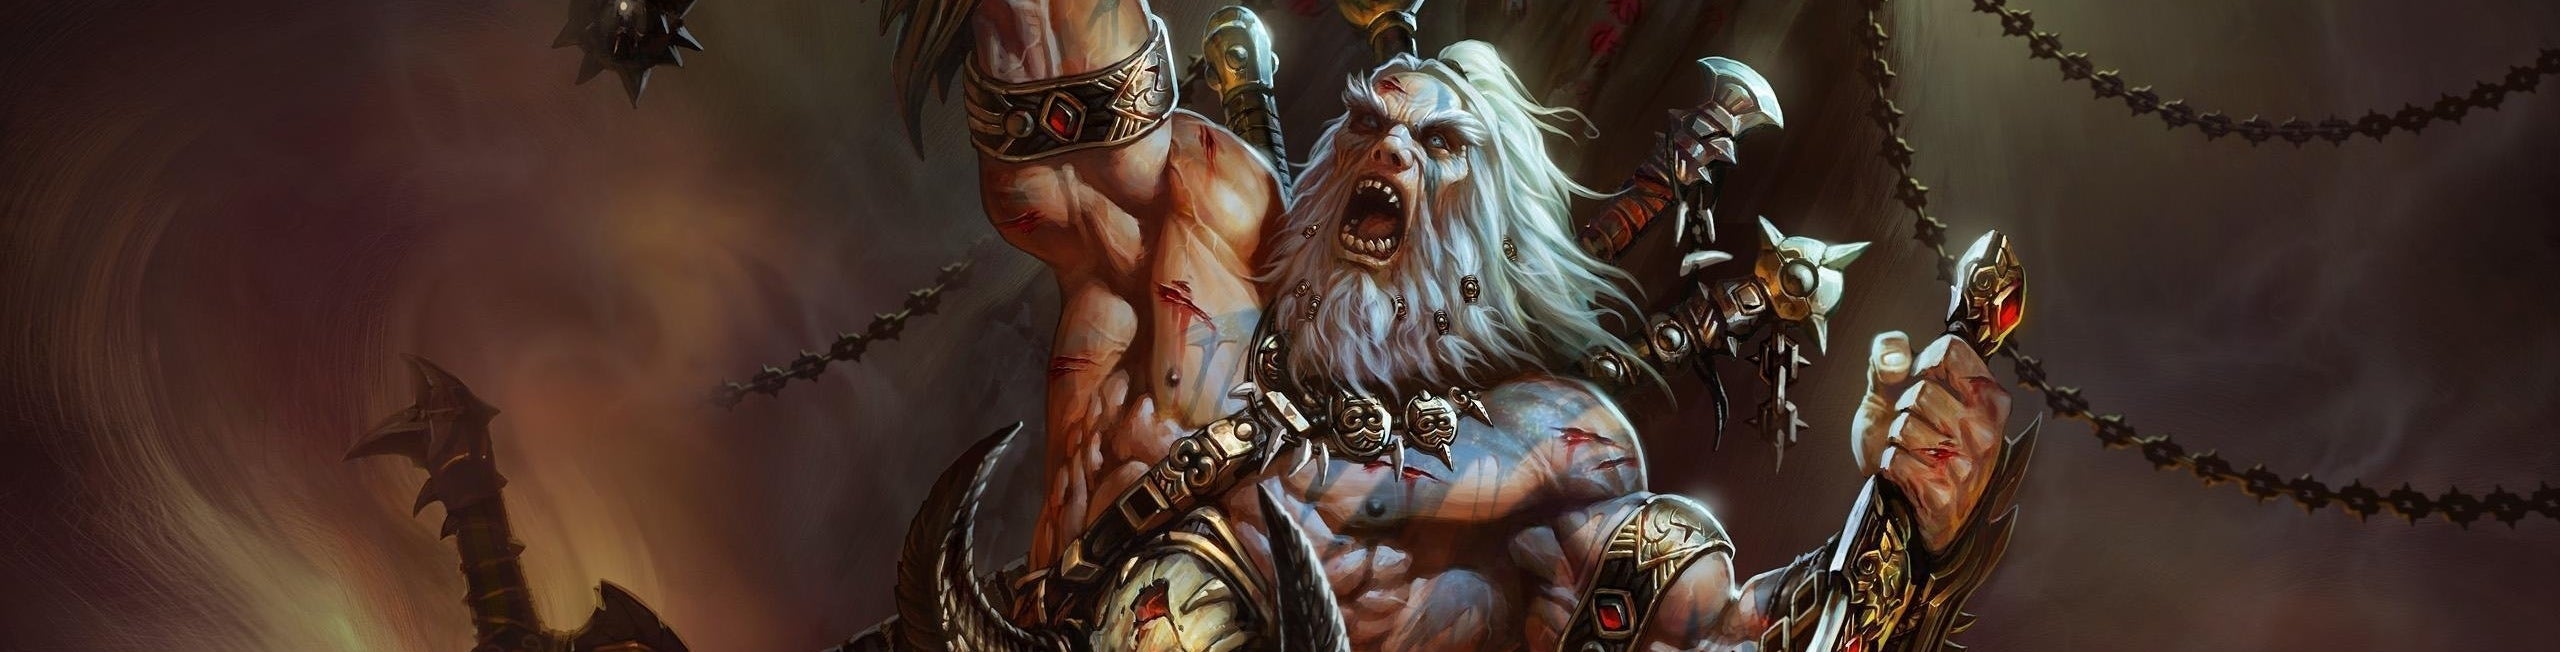 Imagen para Análisis de Diablo III en consolas